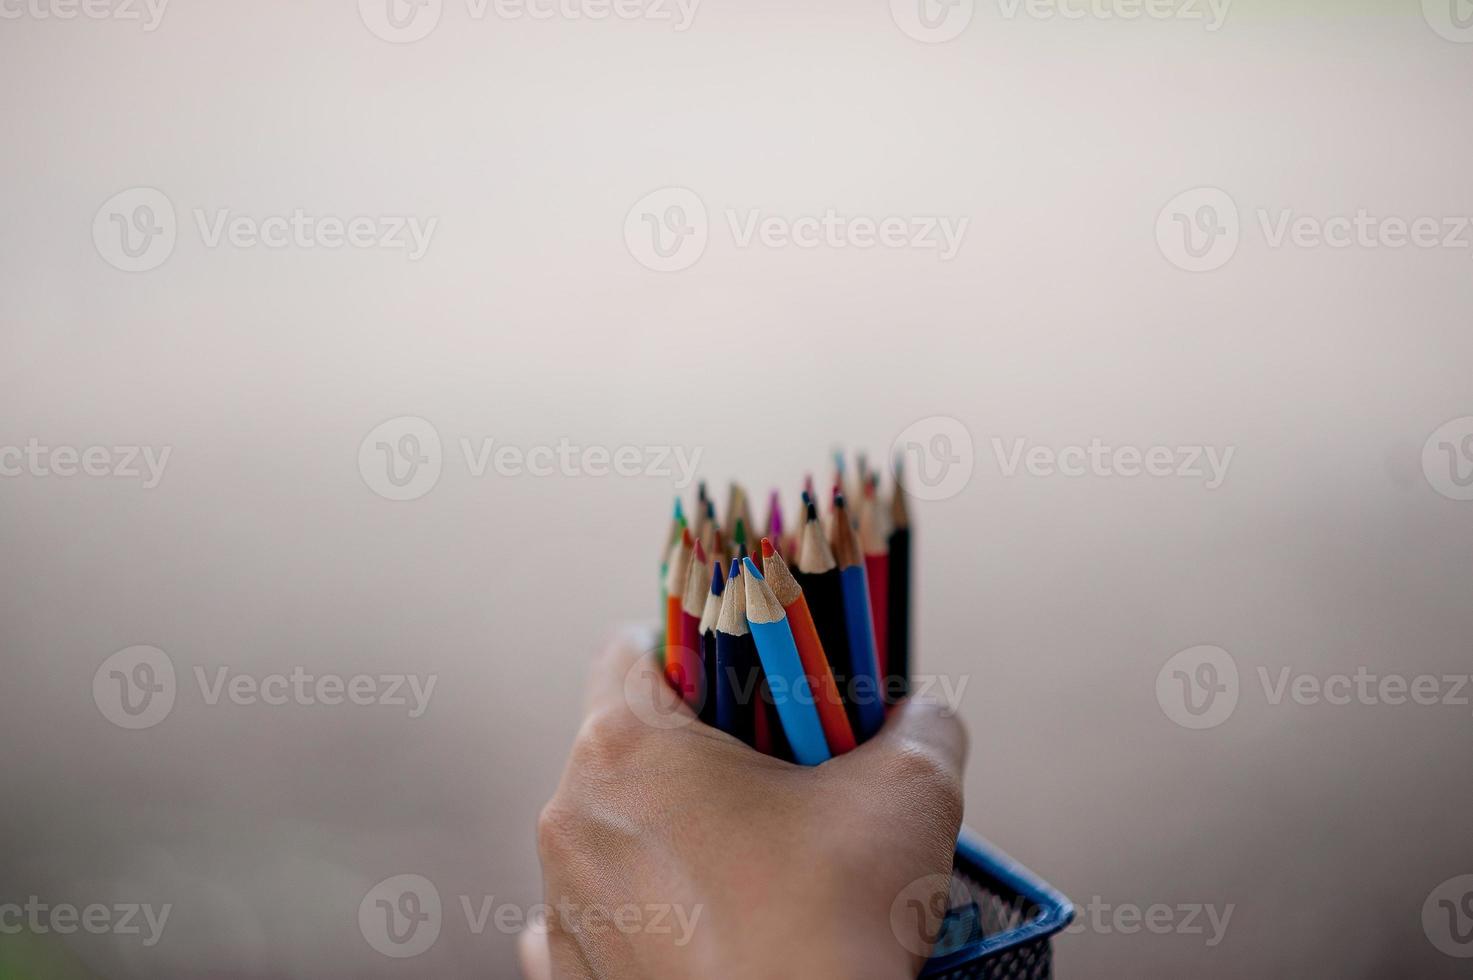 imágenes de mano y lápiz, concepto de educación de color de fondo verde con espacio de copia foto